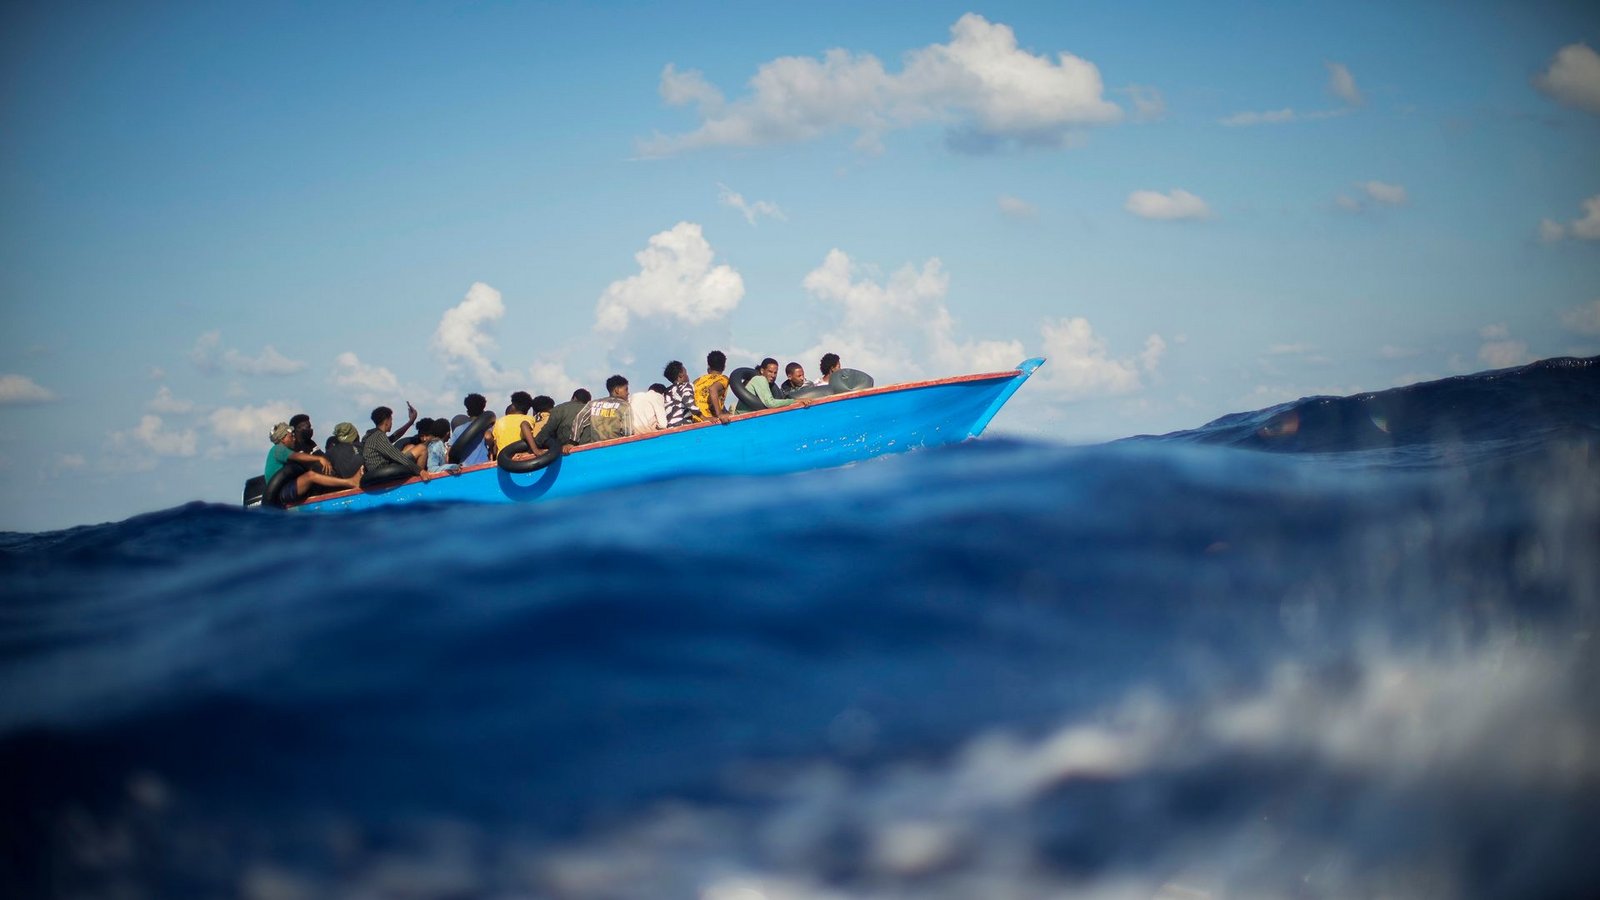 Viele Migranten versuchen die lebensgefährliche Überfahrt in oft seeuntauglichen Booten.Foto: Francisco Seco/AP/dpa/Archiv